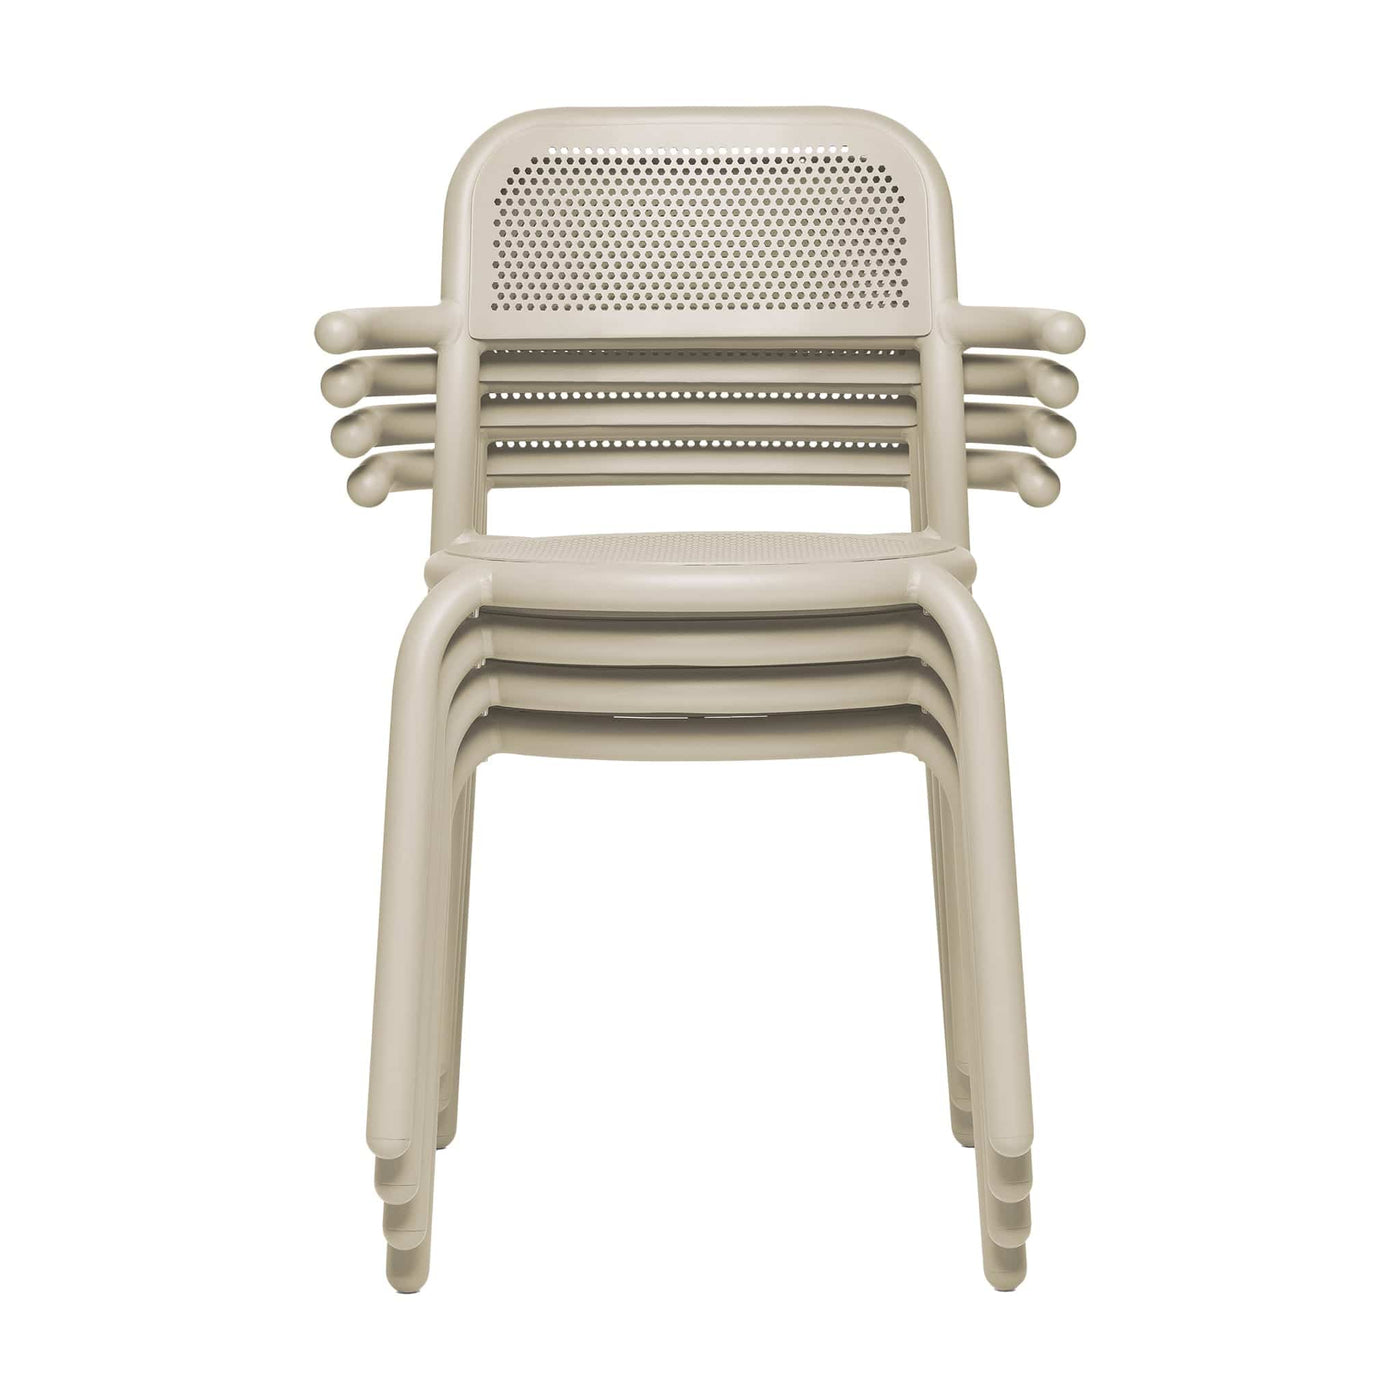 Améliorez votre espace extérieur avec la chaise Toní de Fatboy, alliant confort et design intemporel.